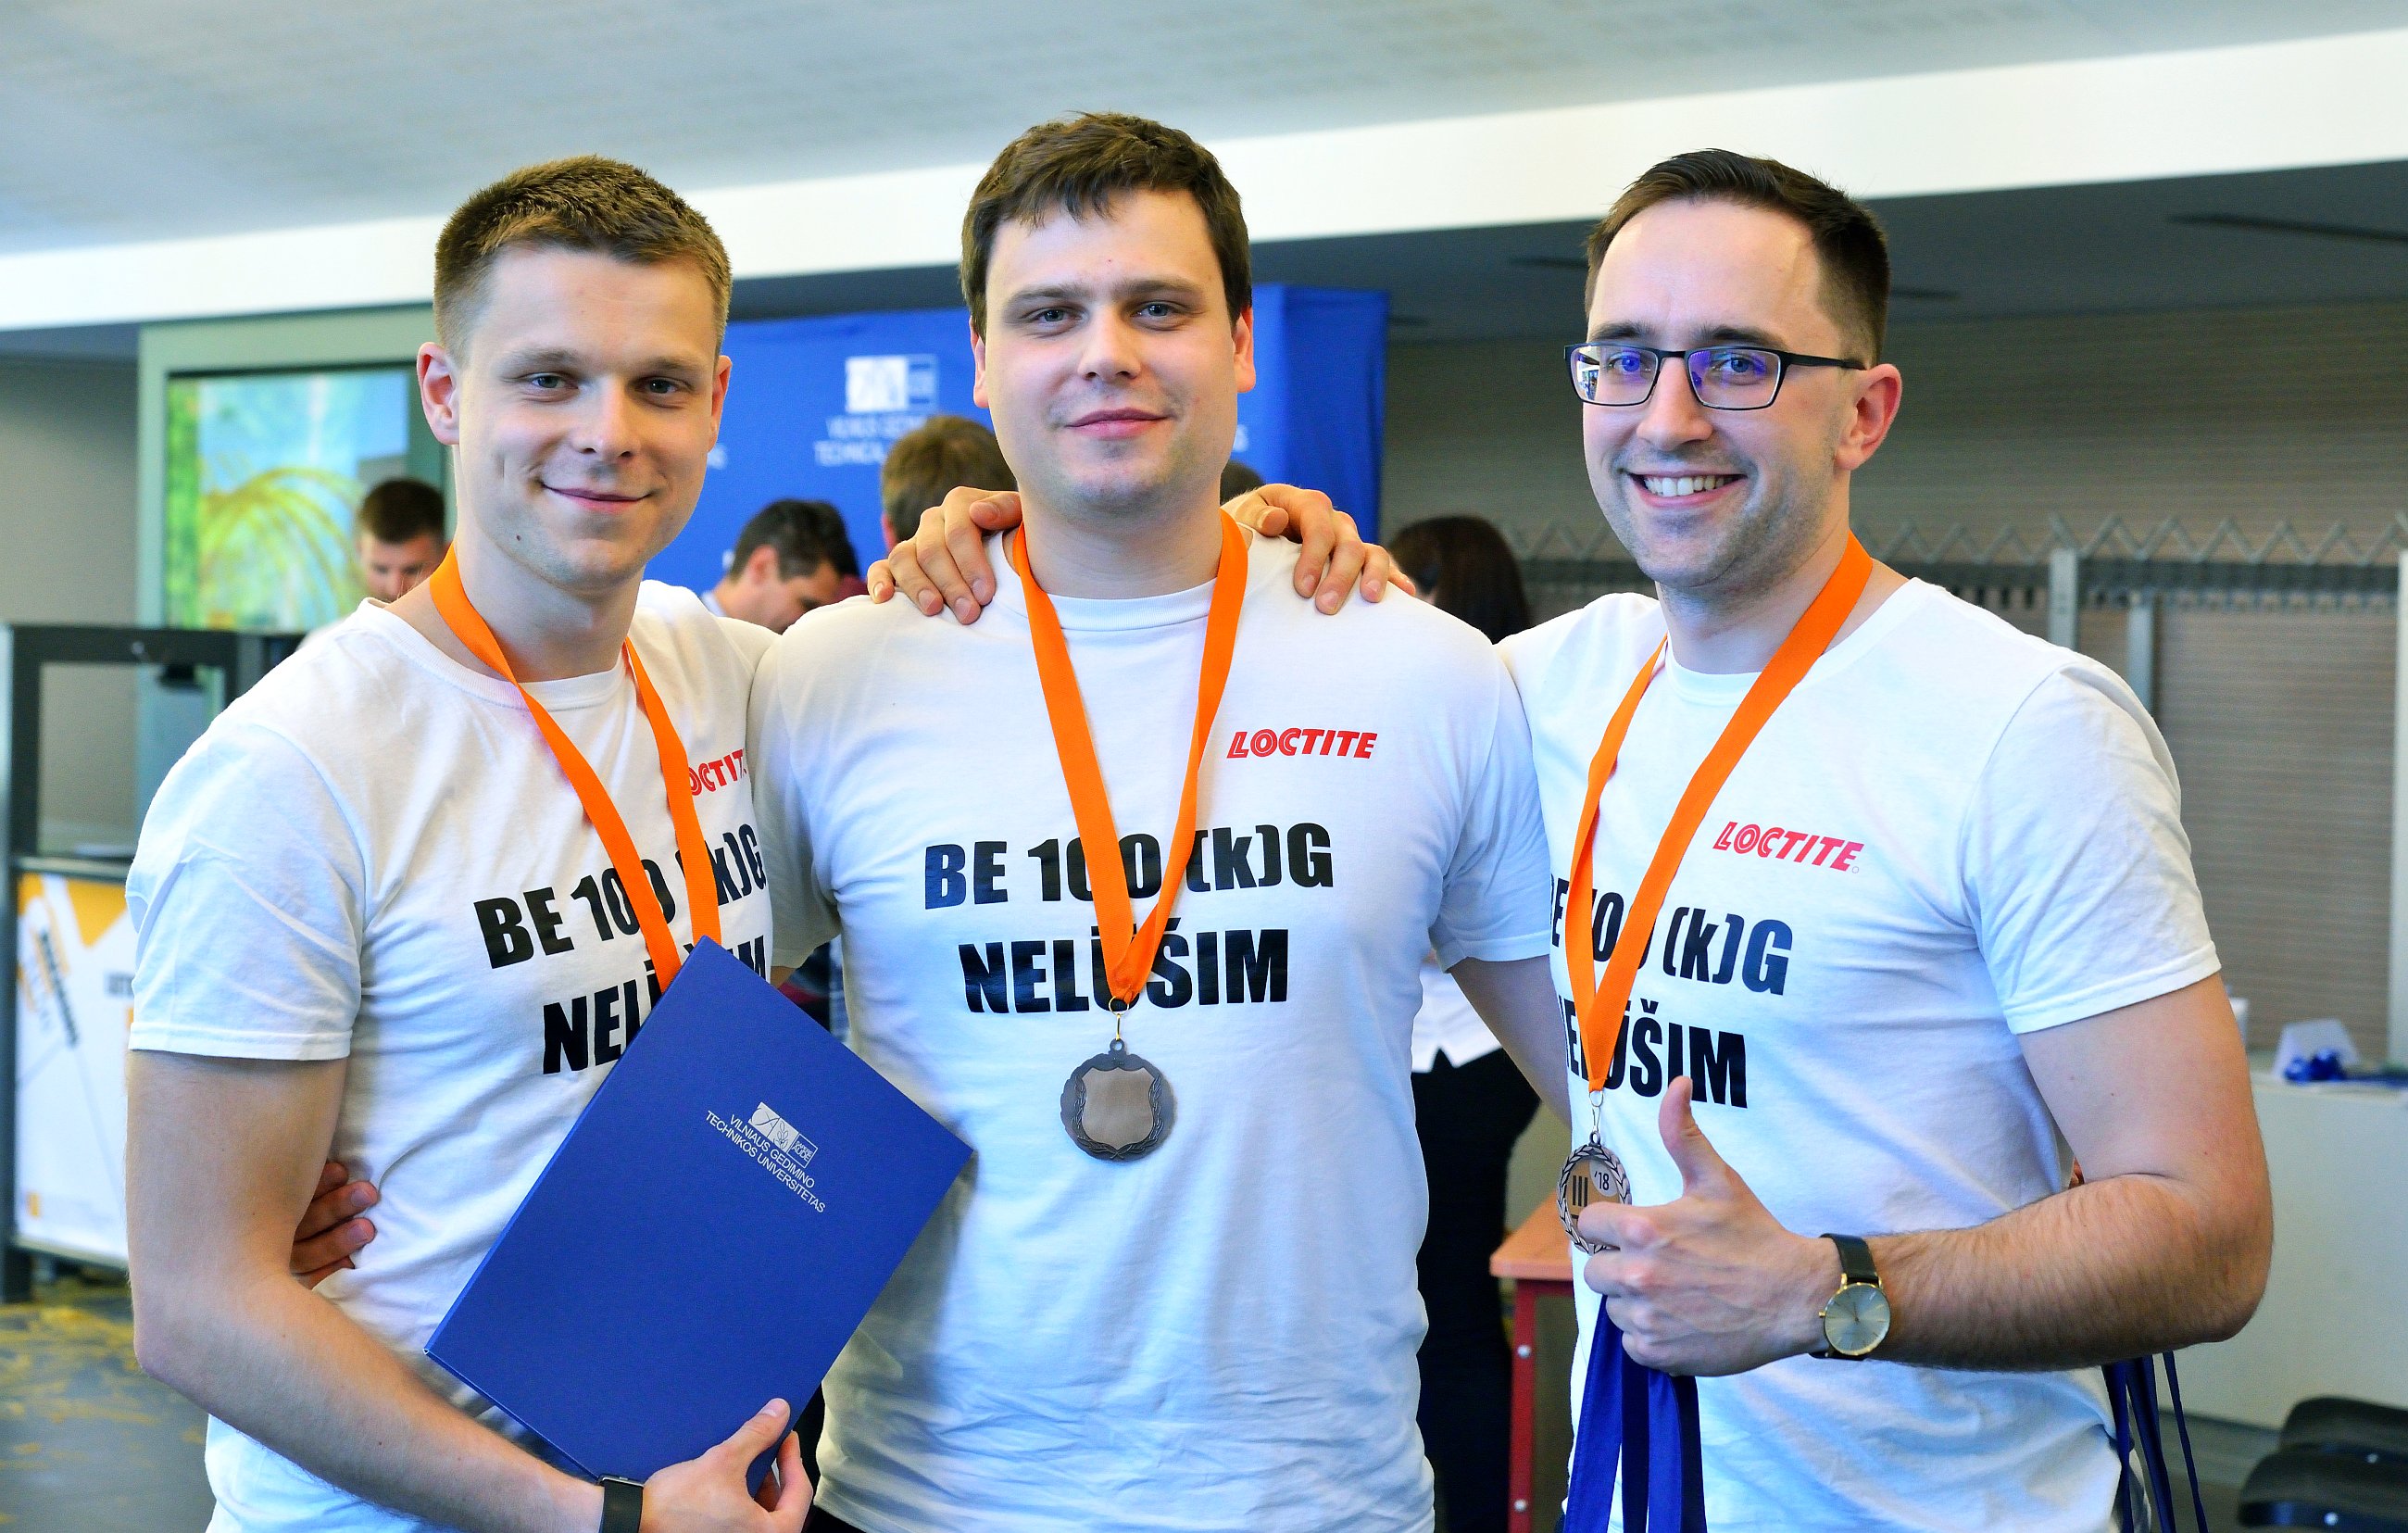 Trečios vietos nugalėtojai - VGTU absolventų komanda, čempionato veteranai Be 100 kg nelūšim